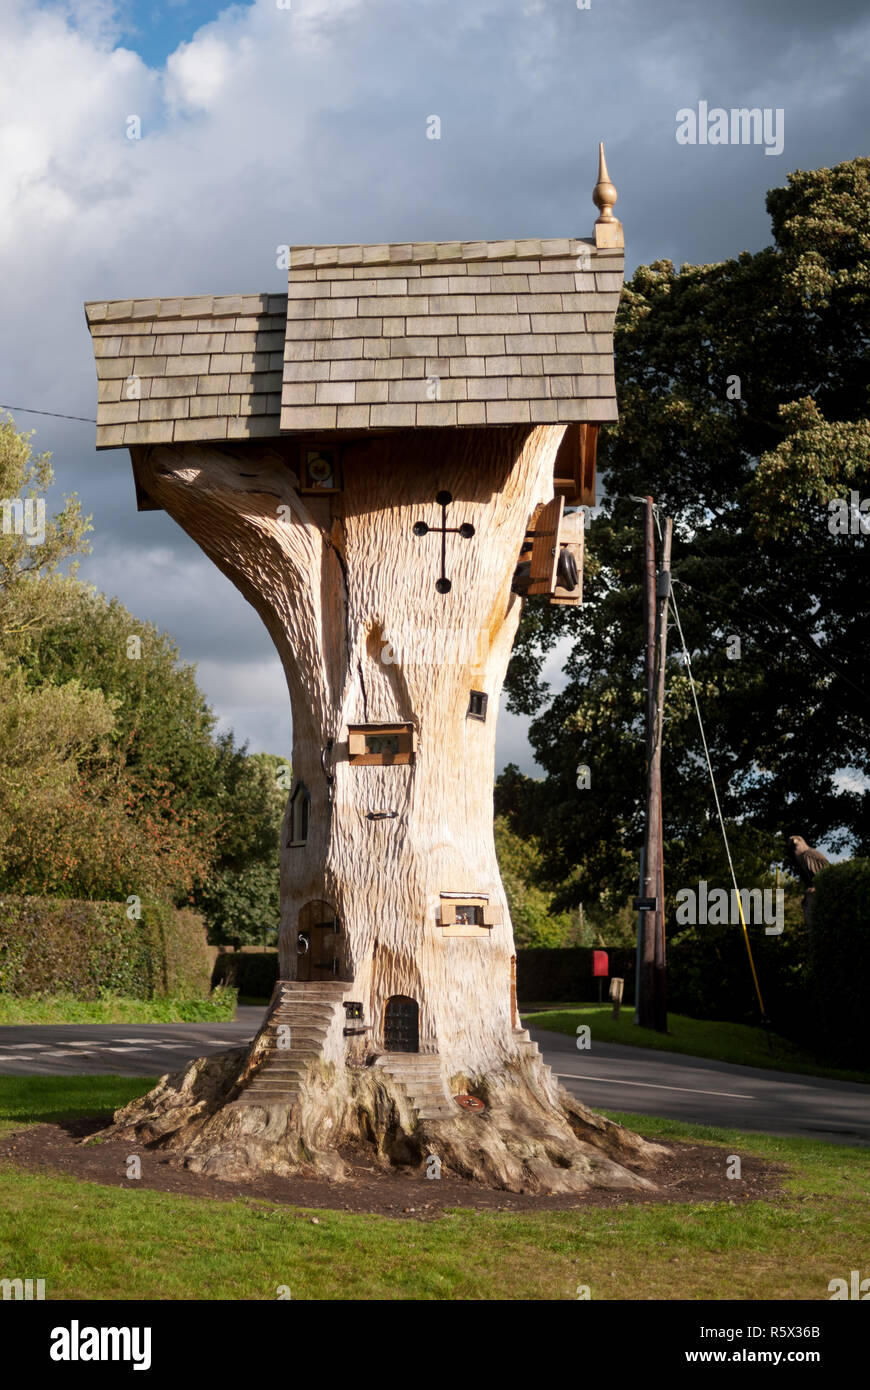 Árbol de la imaginación - Bajar Peover, Cheshire Foto de stock